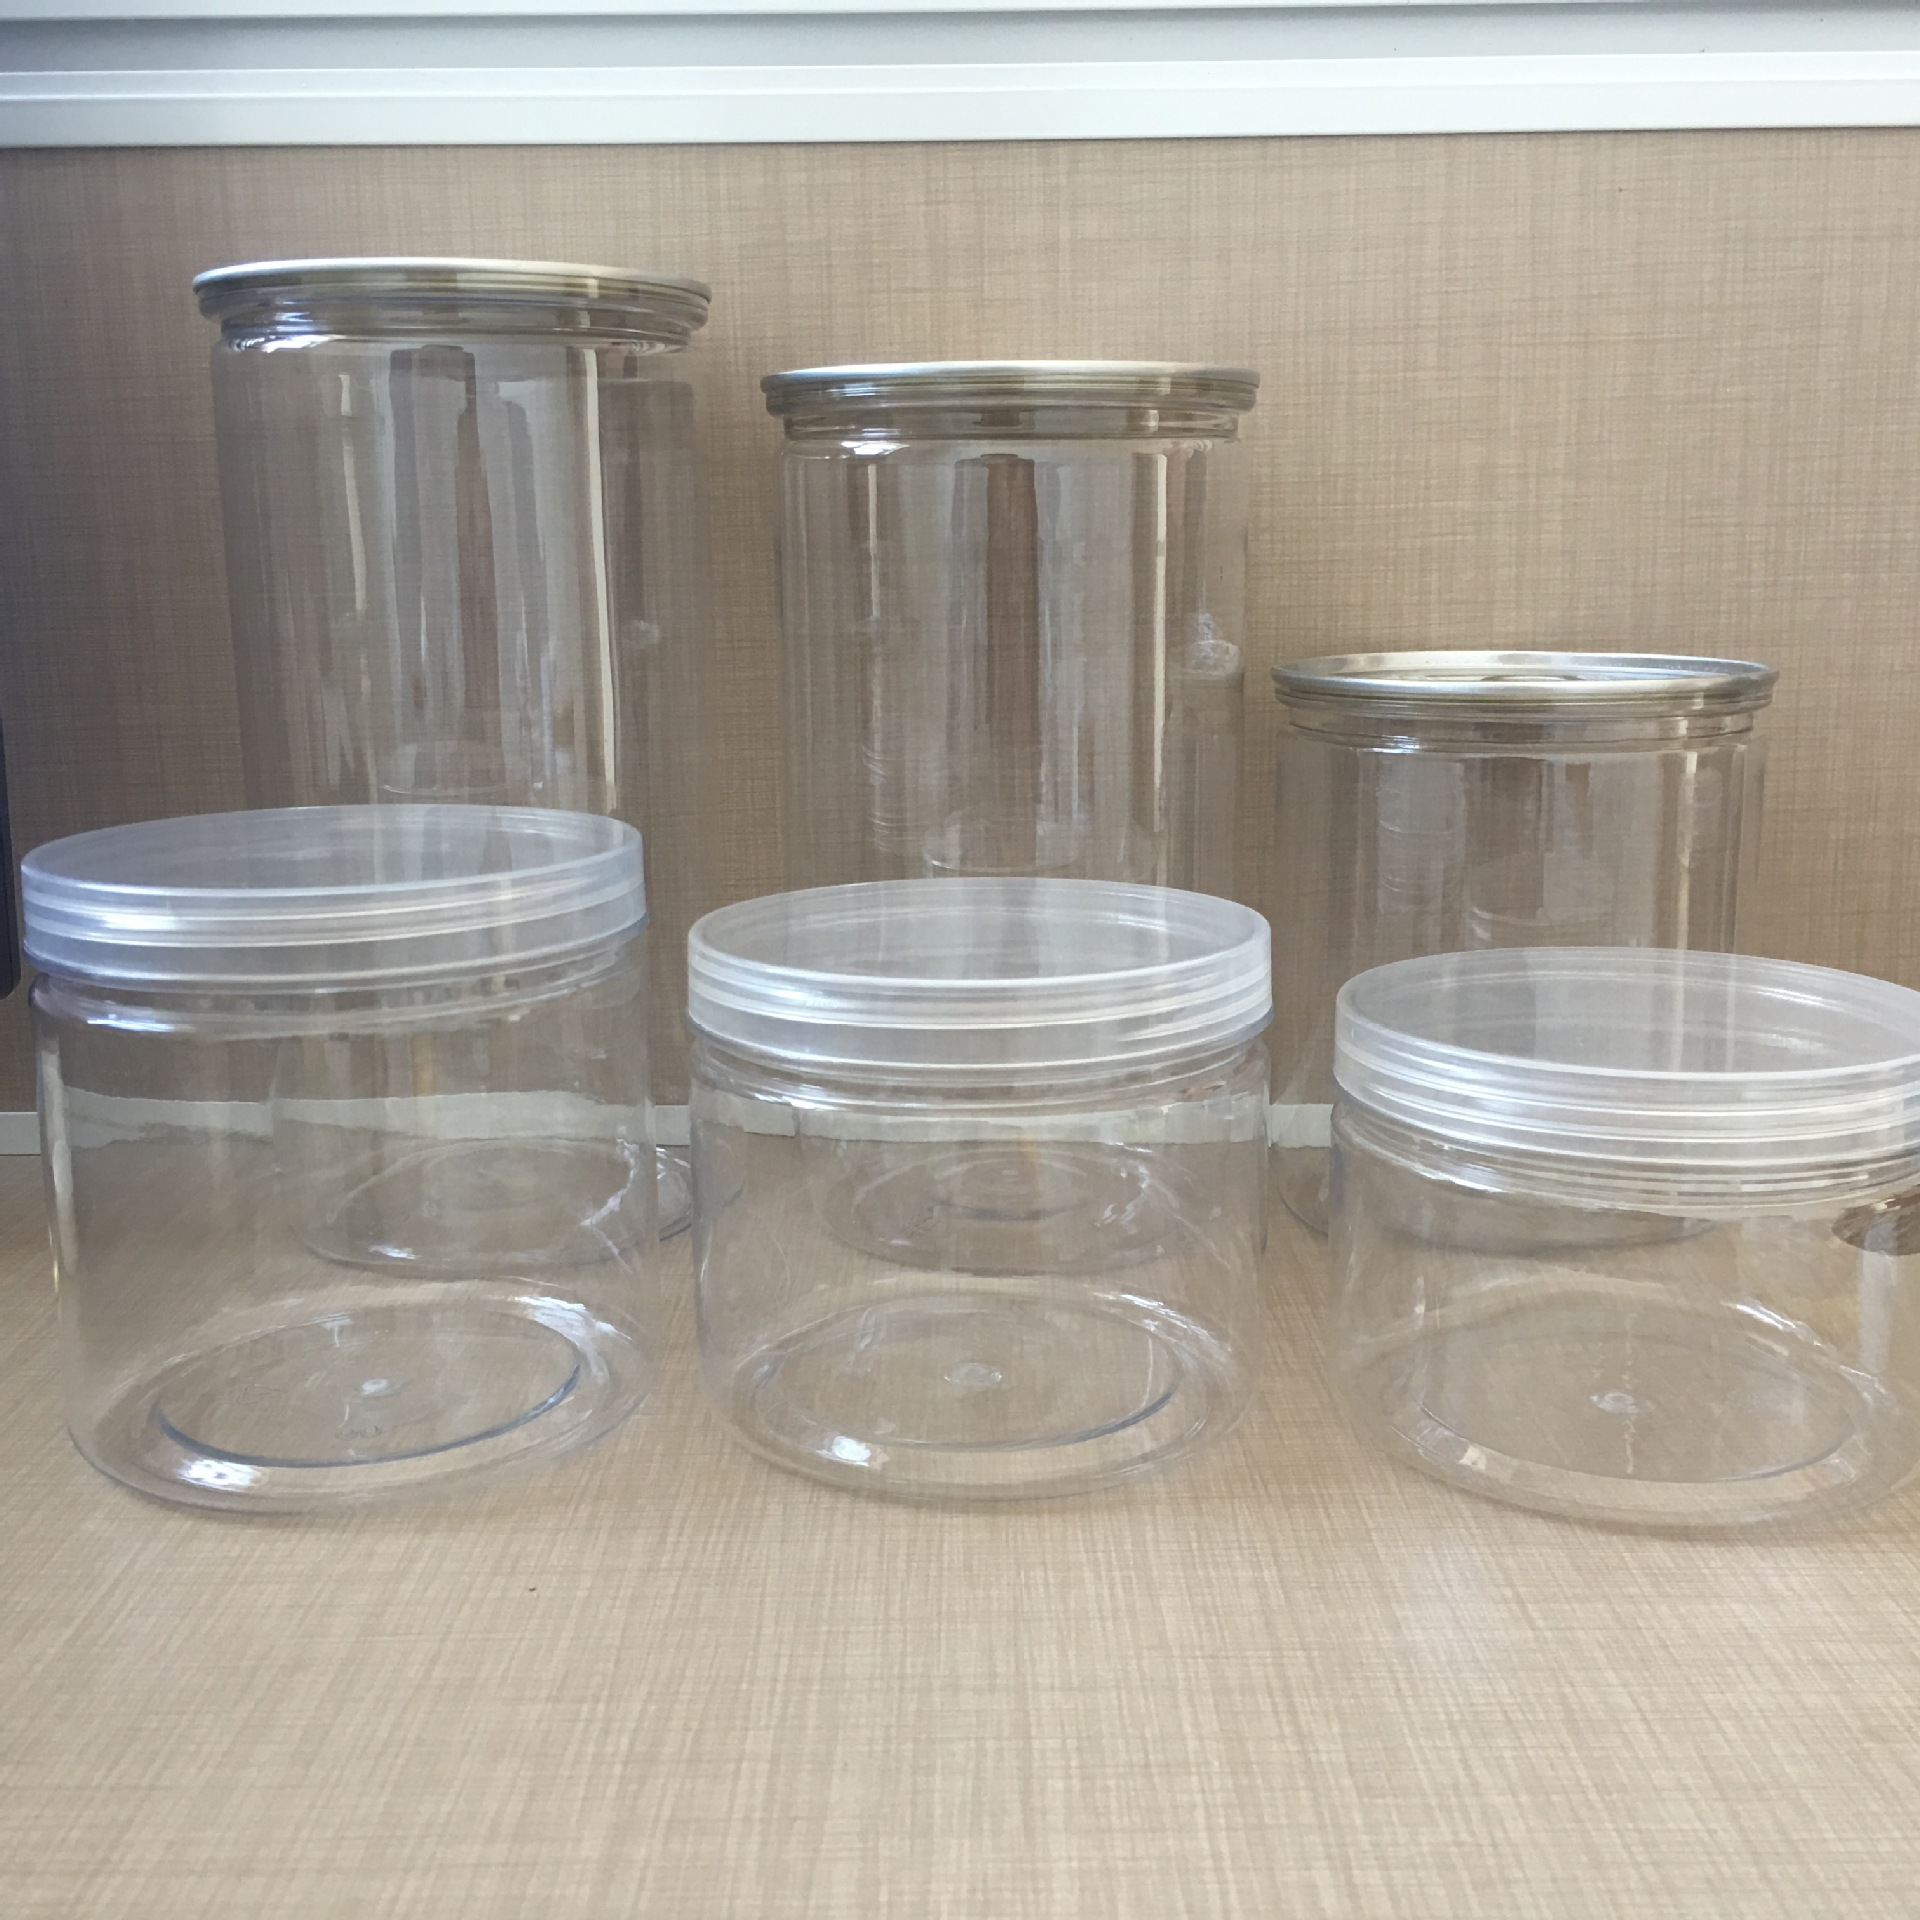 厂家直销pet塑料罐食品塑料罐医用塑料罐包装罐现货供应价格优惠示例图9